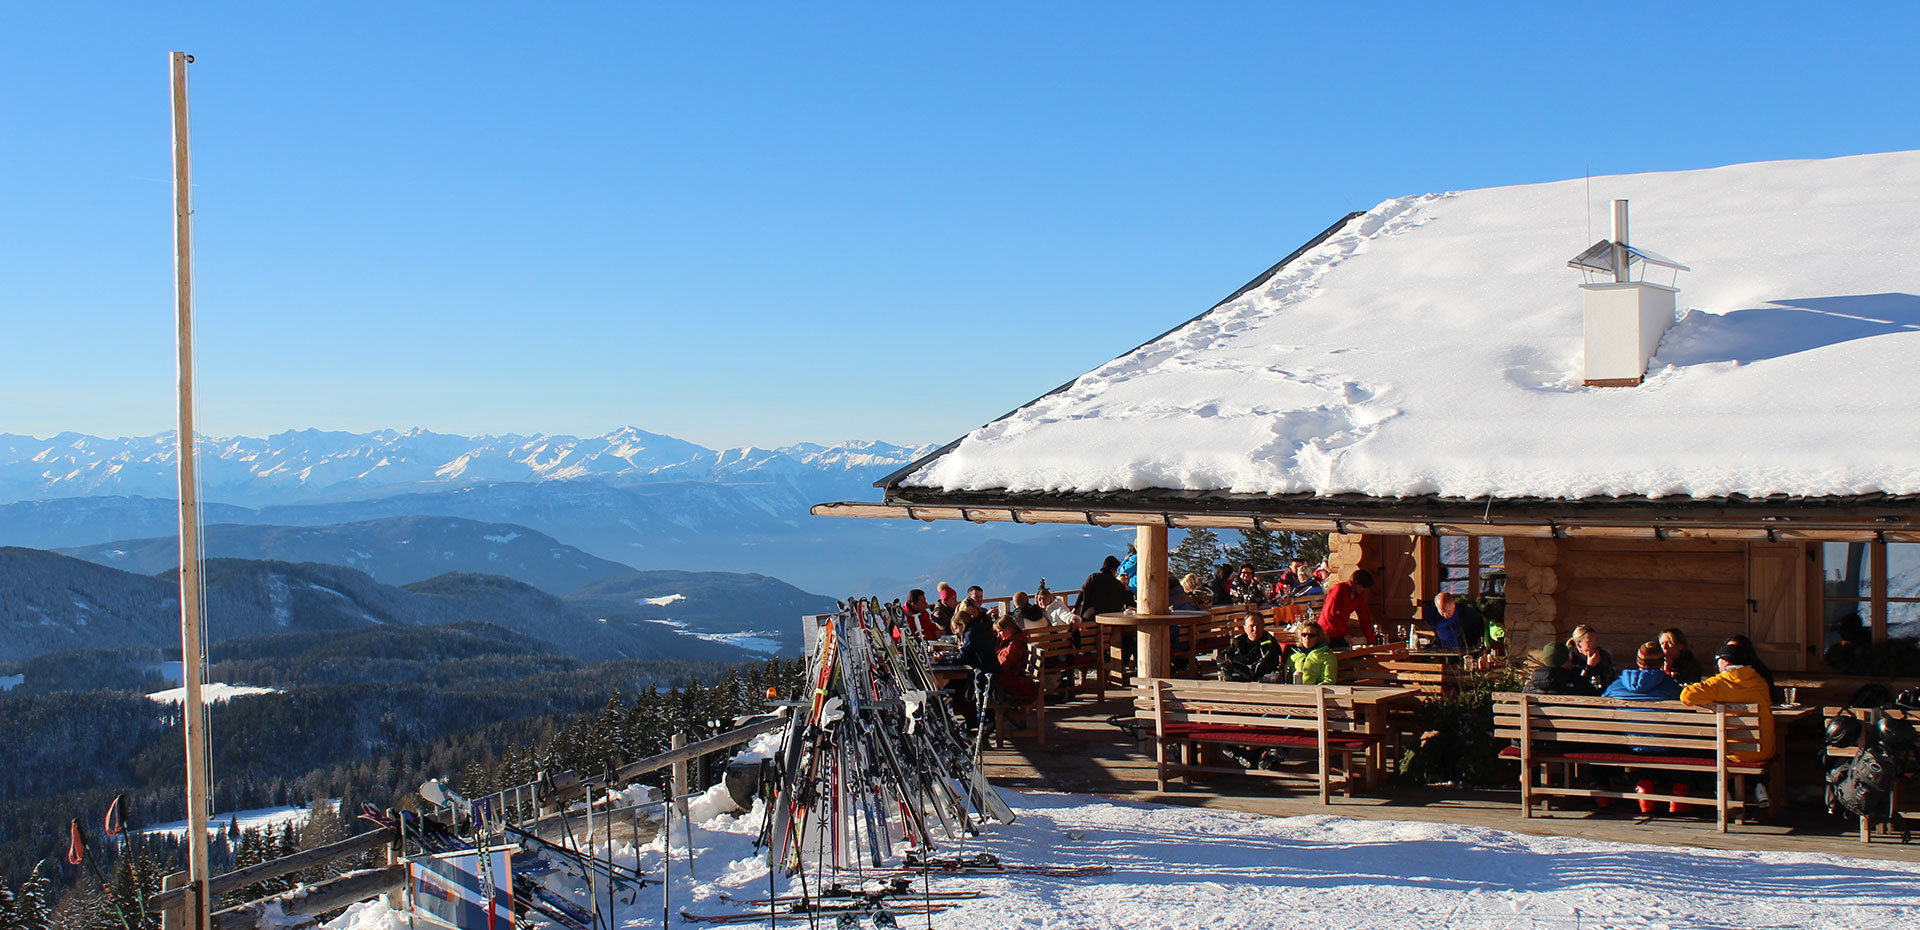 Carezza ski area in South Tyrol